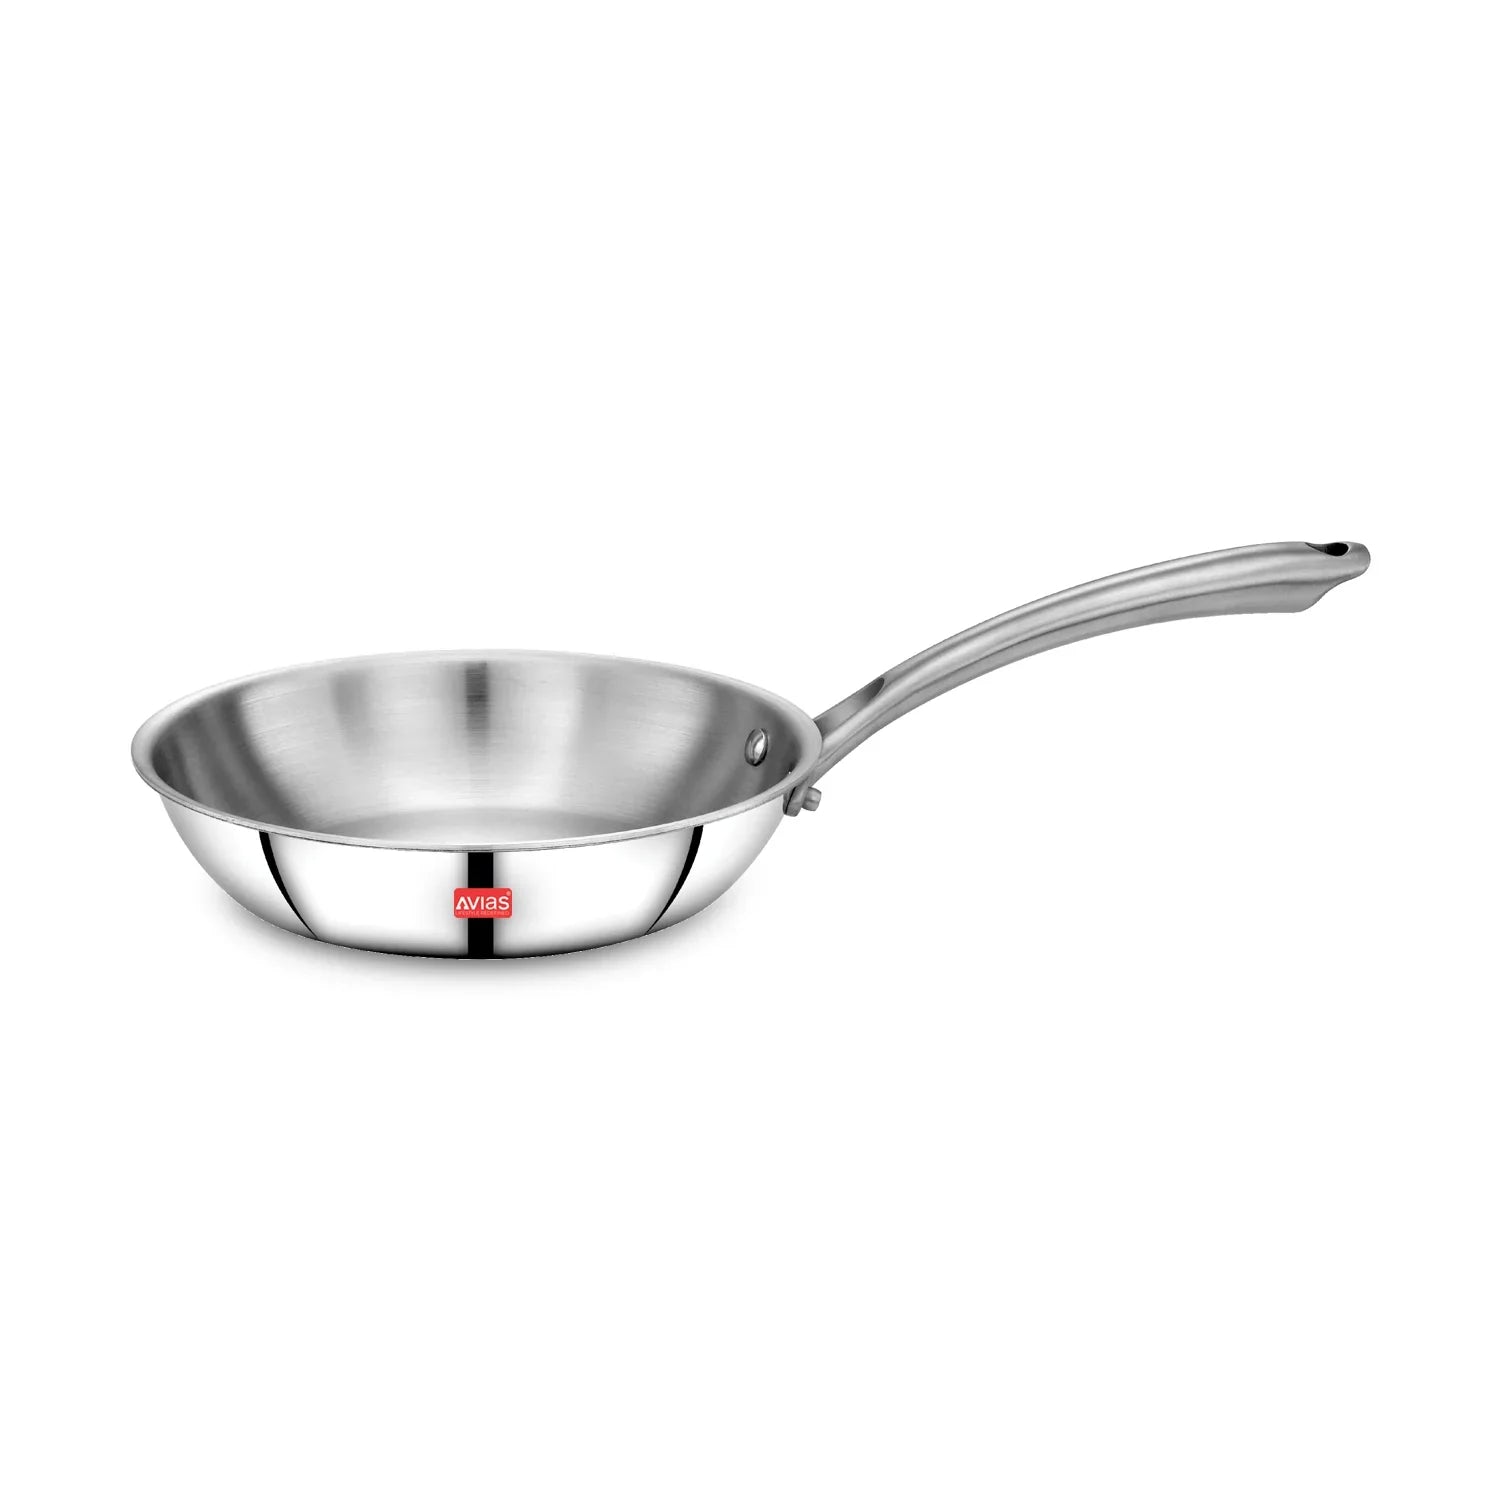 AVIAS Riara premium stainless steel Triply Fry pan